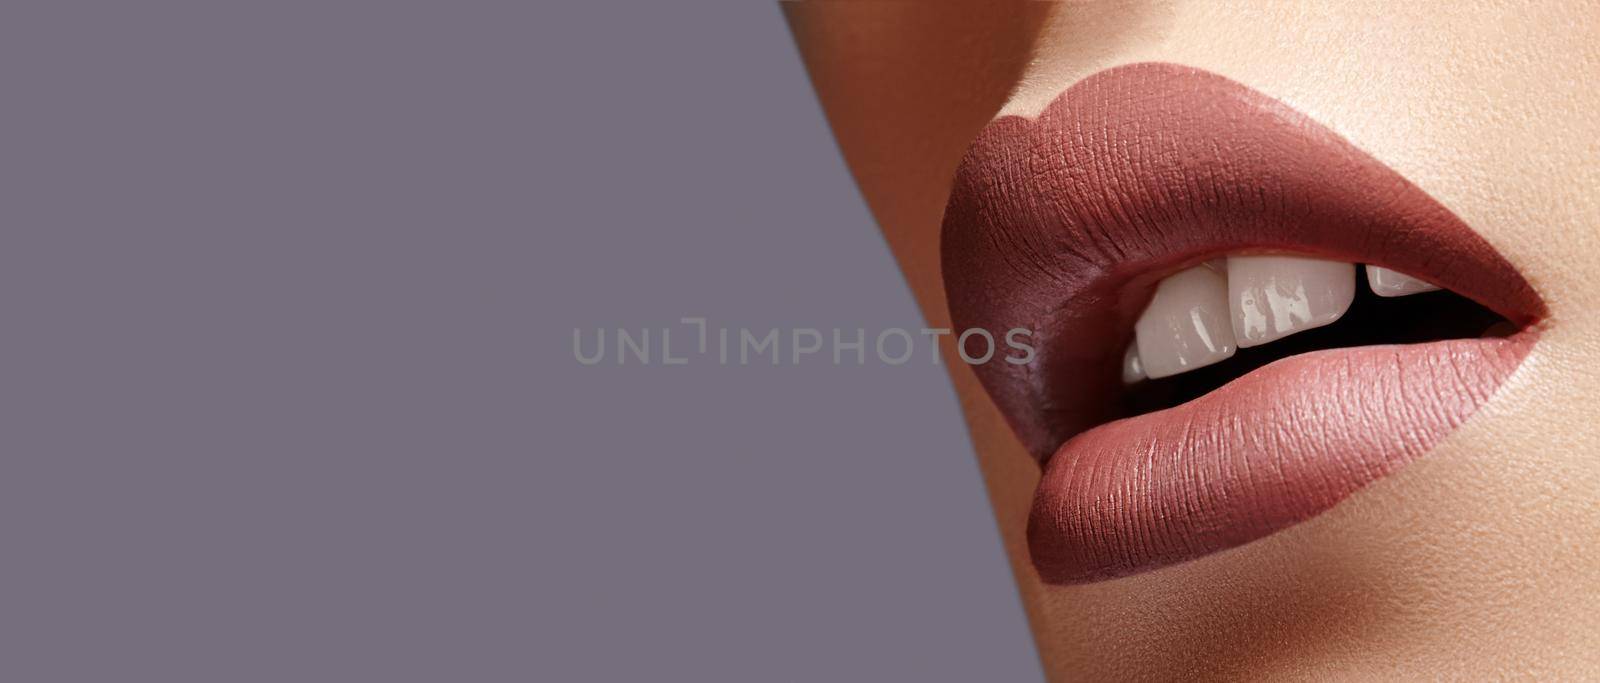 Close-up Female Full Lips with Fashion Natural coffee Lipstick Makeup. Macro Sexy Lip Stick Make-up. Mat Fashionable Style. Beauty Macro Shot